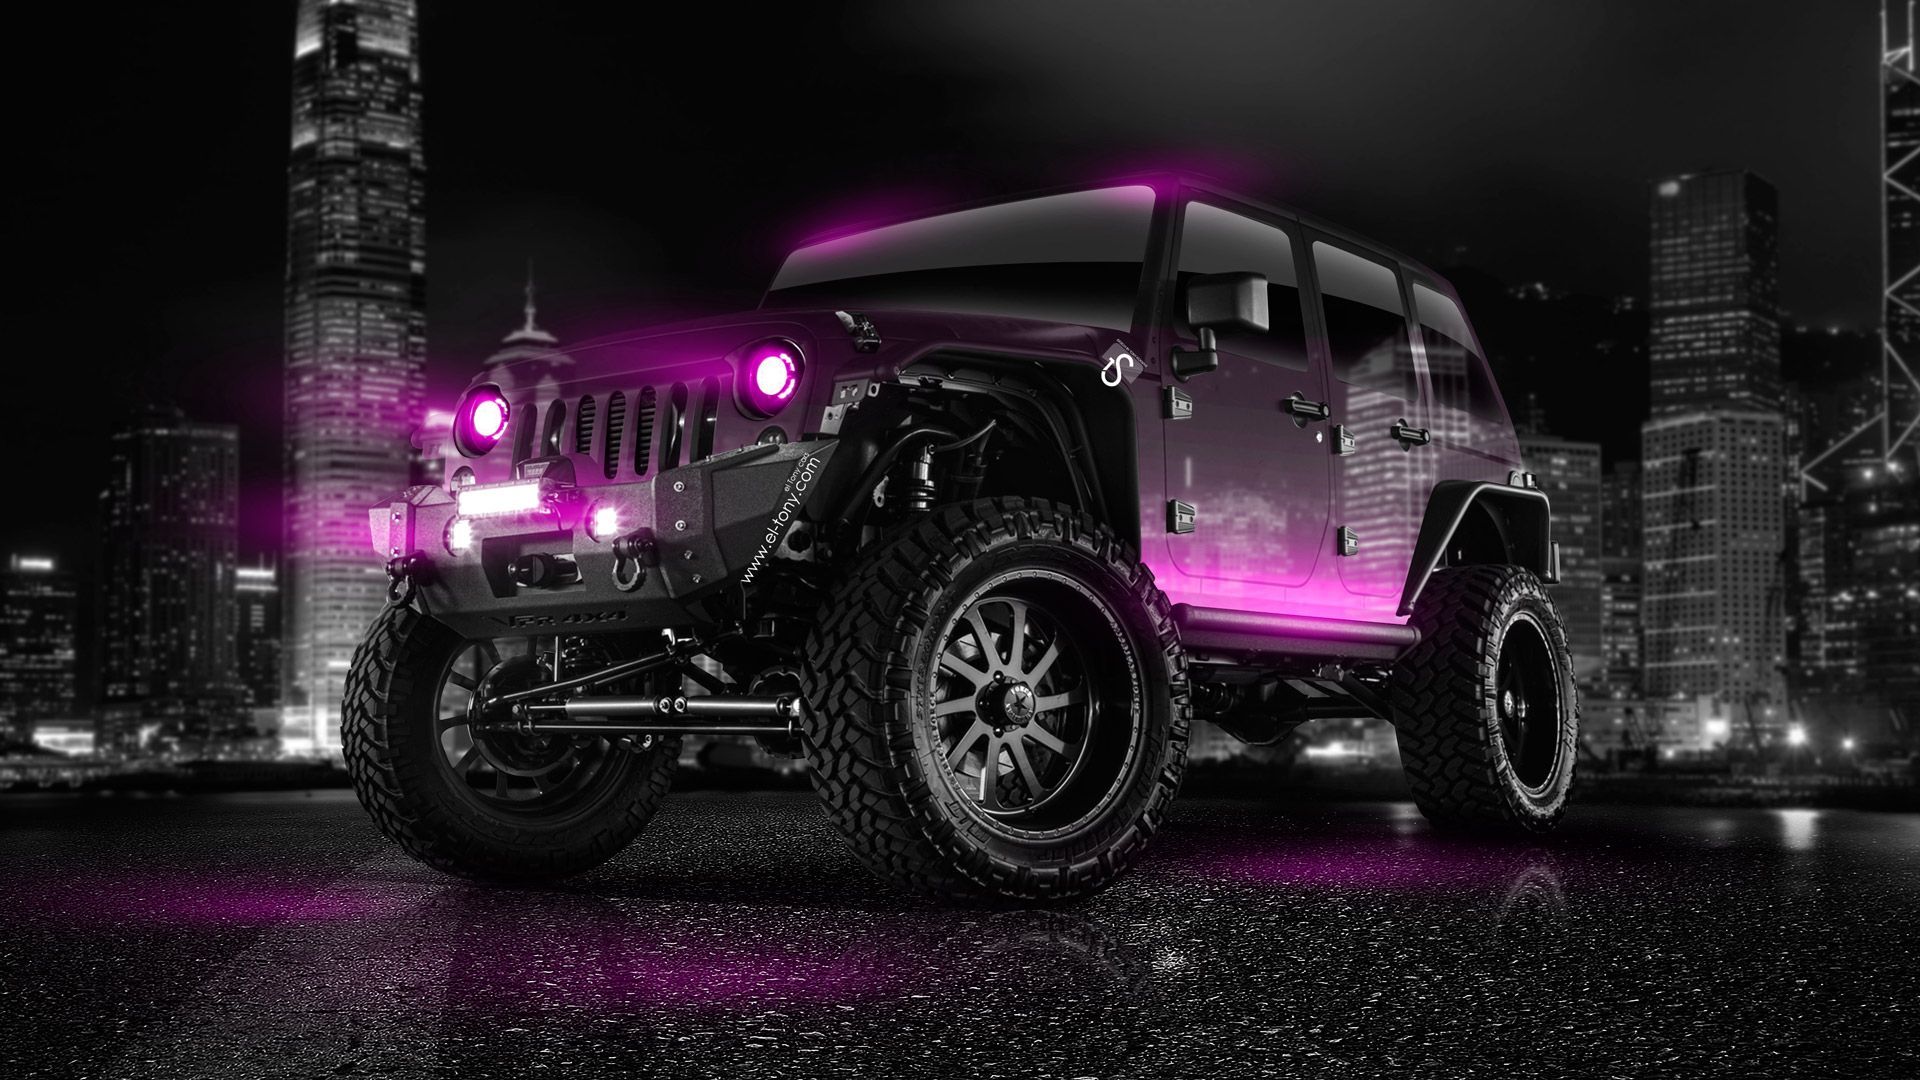 Jeep Wrangler Crystal City Car 2014 « el Tony. Jeep wrangler, Pink jeep wrangler, Jeep wrangler girl